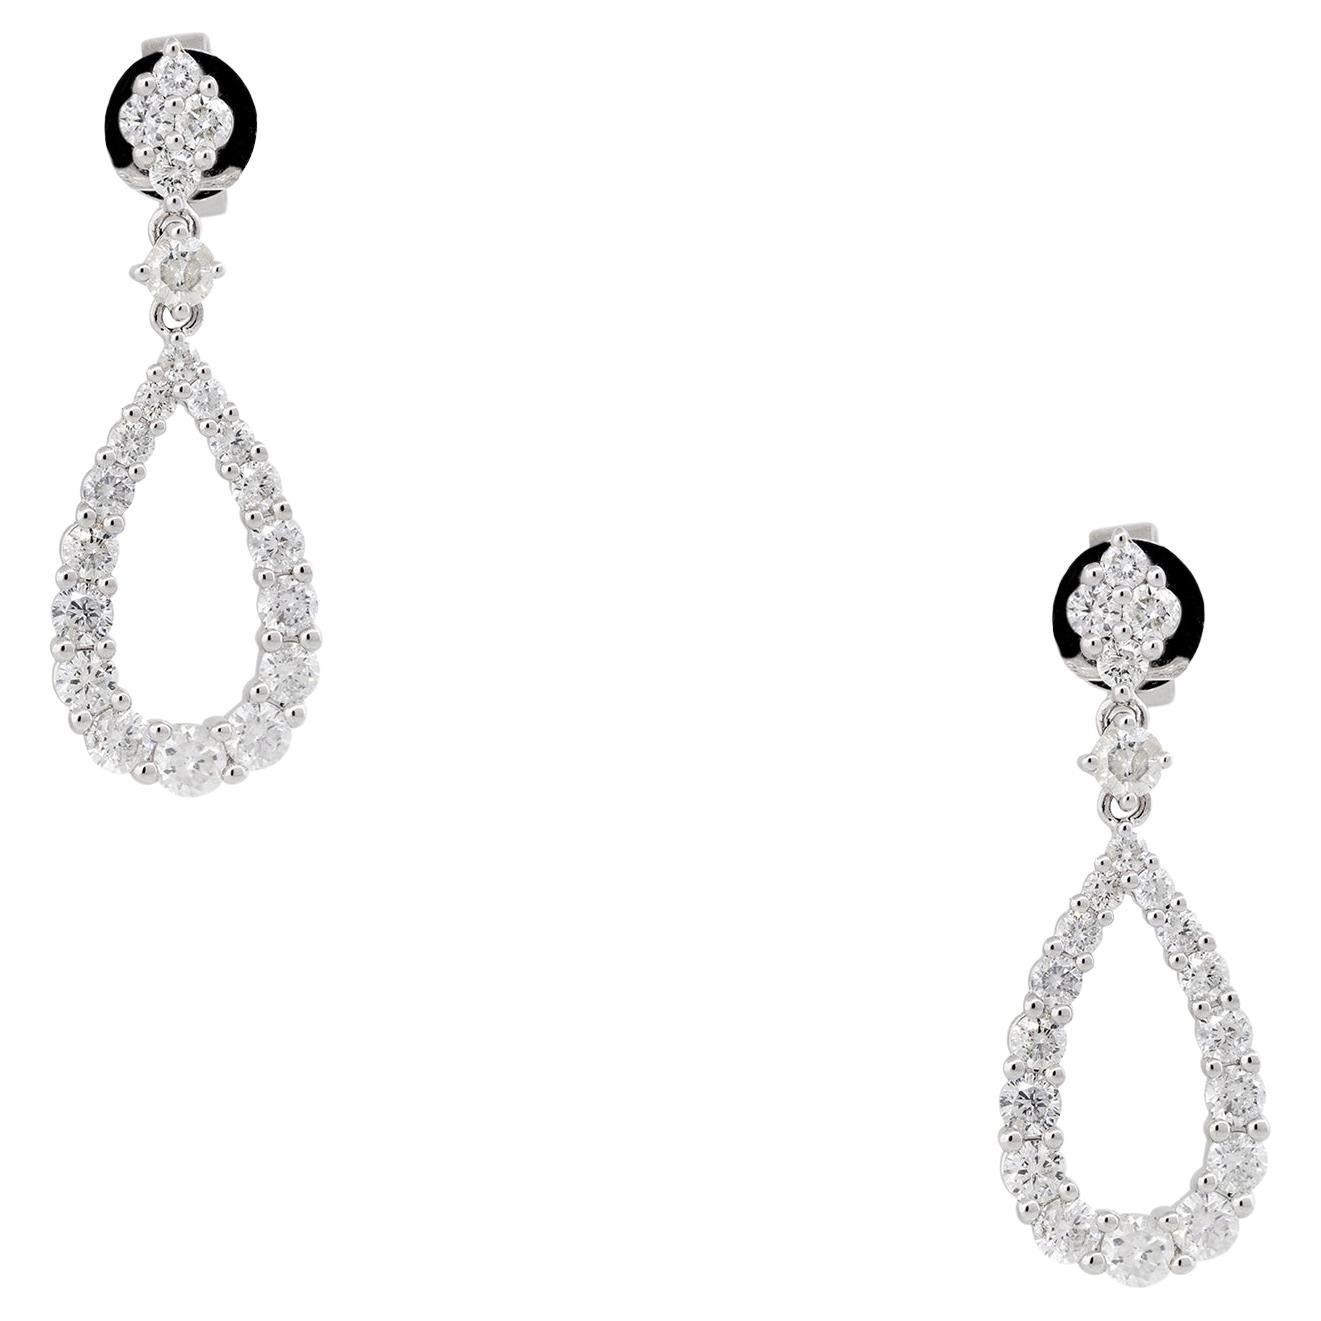 1.77 Carat Round Brilliant Diamond Tear-Drop Shape Earrings 18 Karat In Stock